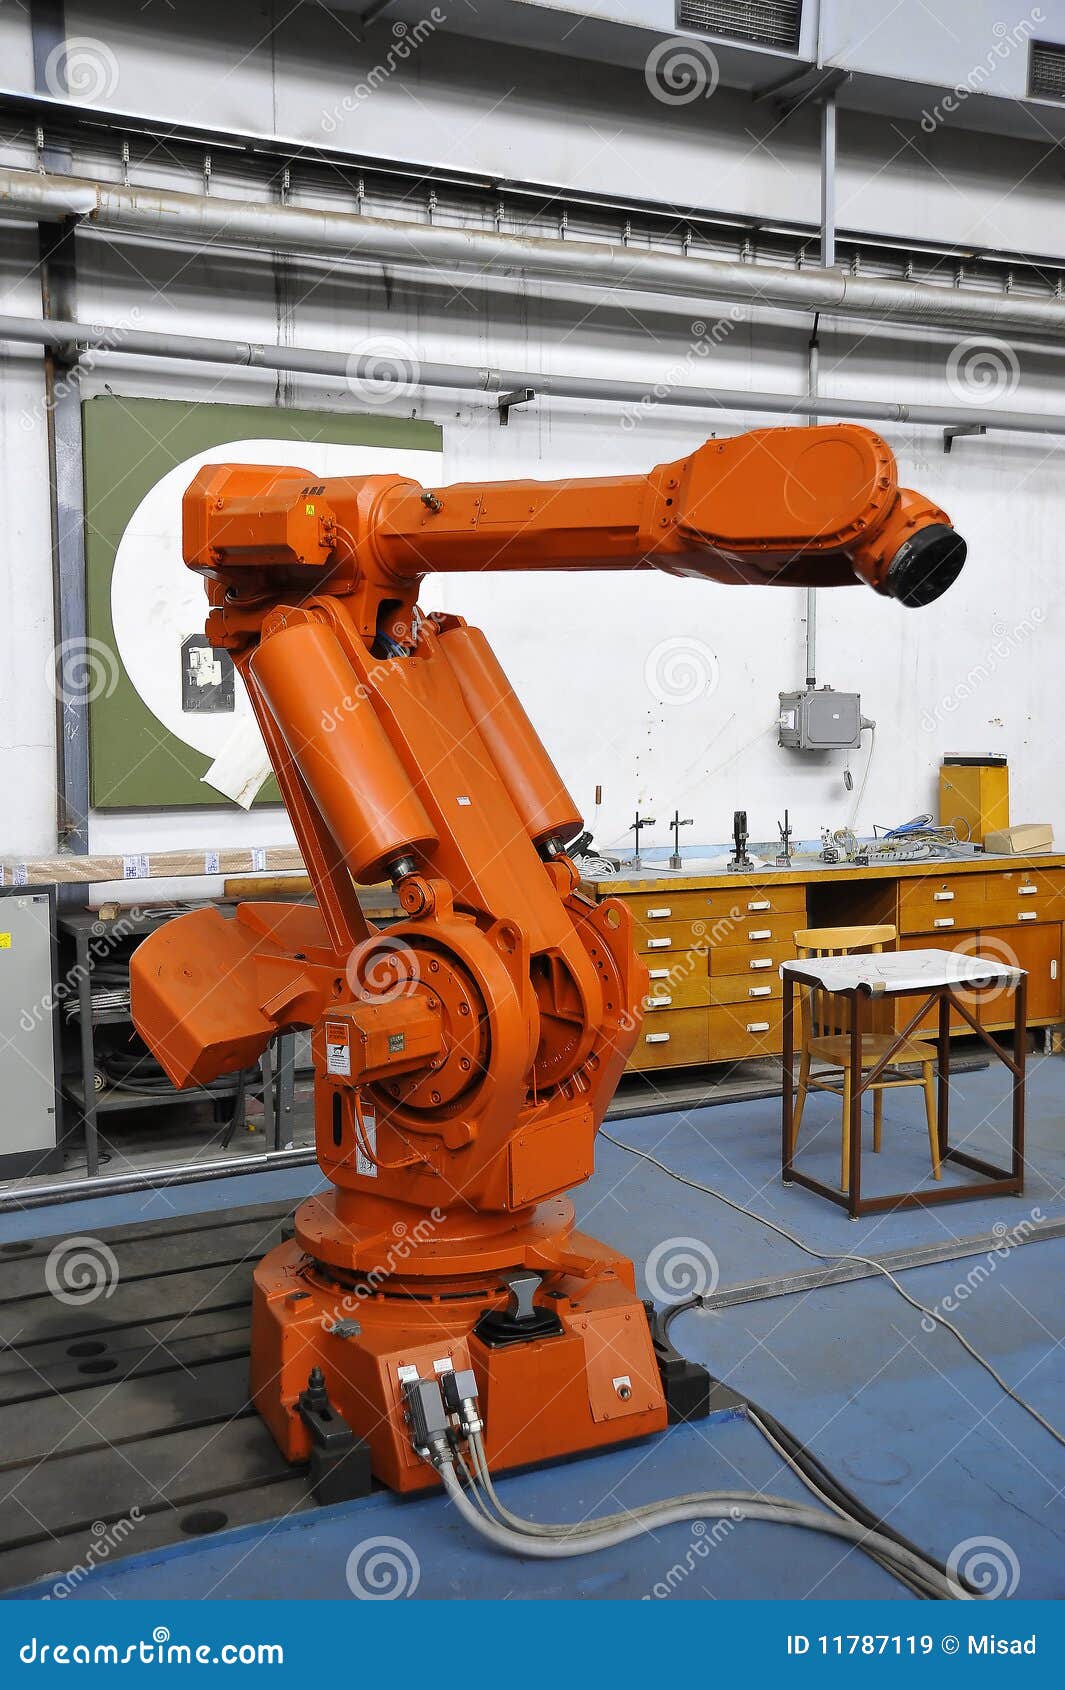 clipart robot industriel - photo #15